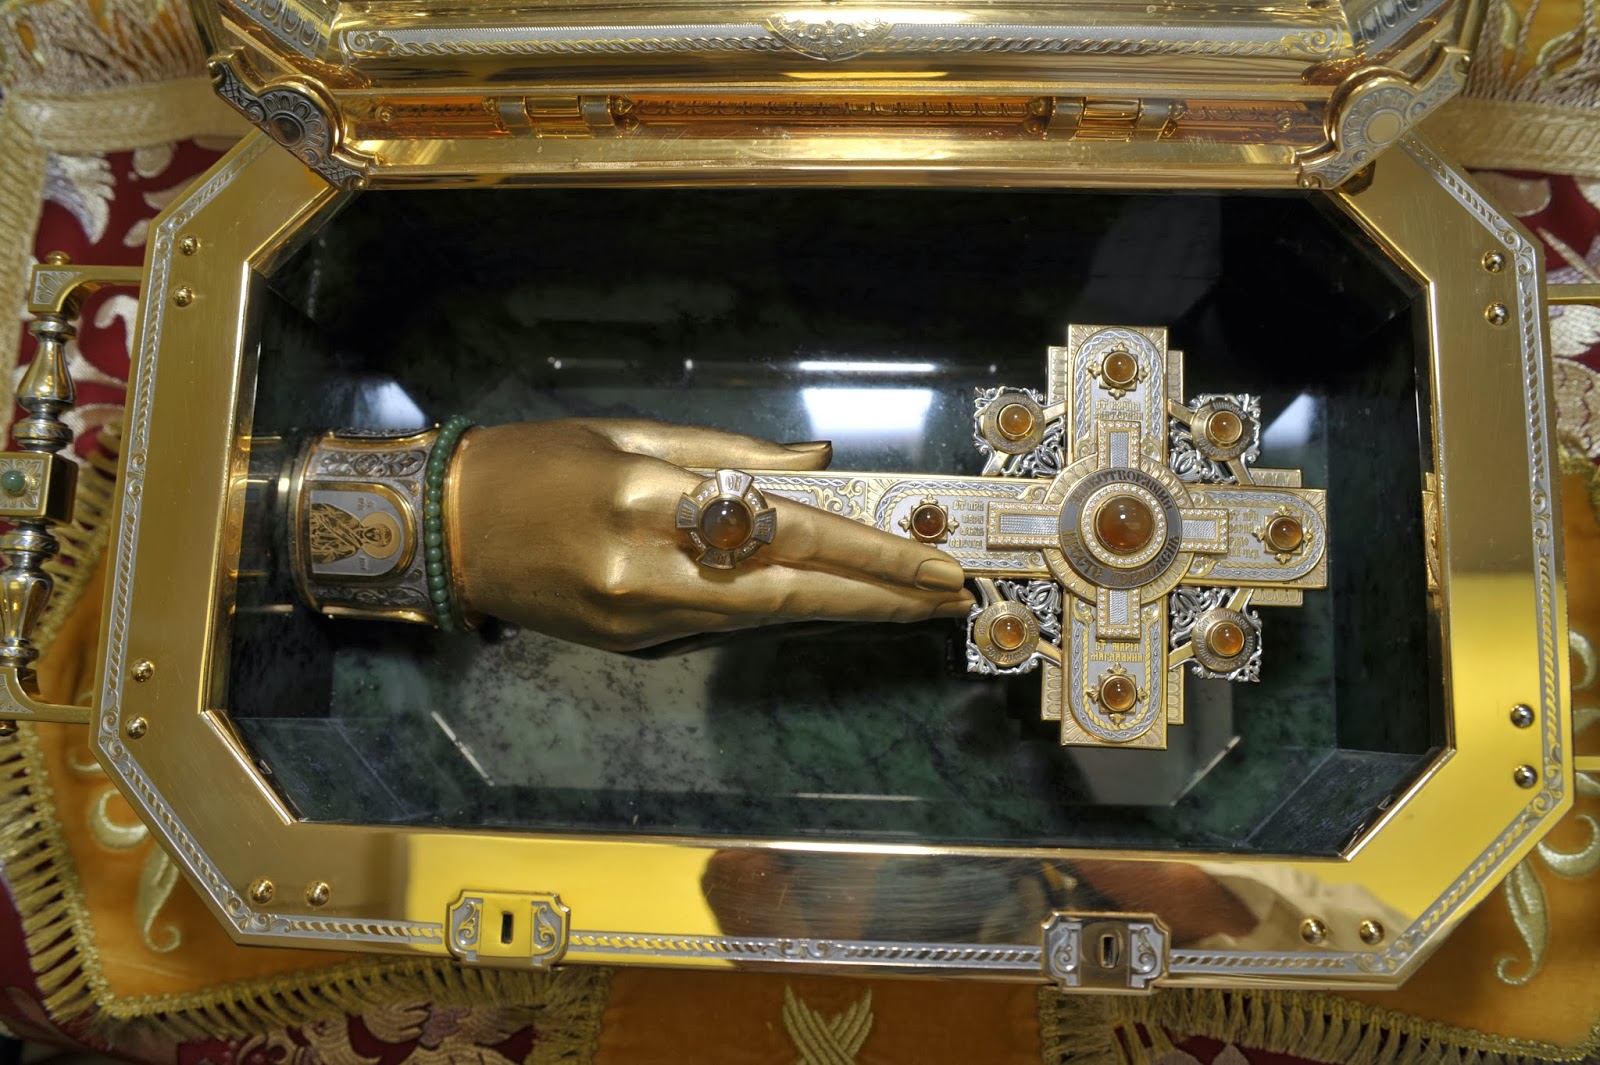 Η λειψανοθήκη της Παναγίας Πορταΐτισσας των Ιβήρων στο Ντνιπροπετρόφσκ http://leipsanothiki.blogspot.be/